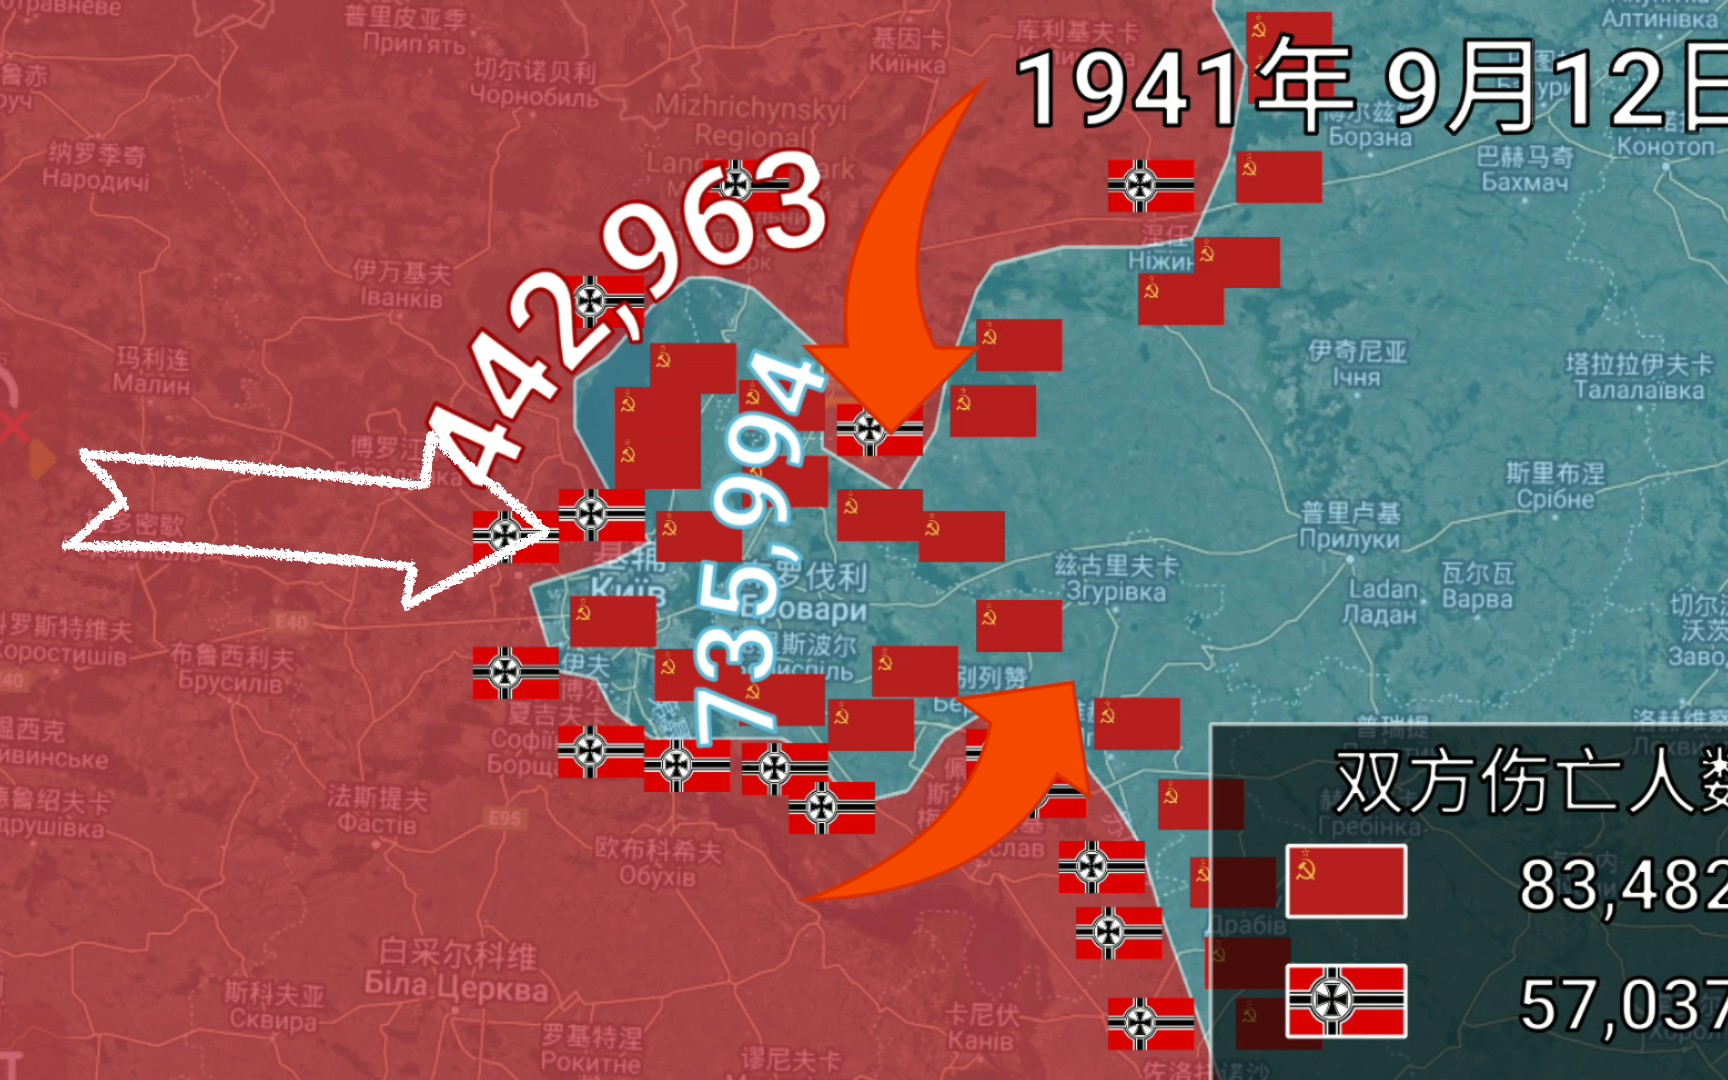 1941年基辅战役战线变化